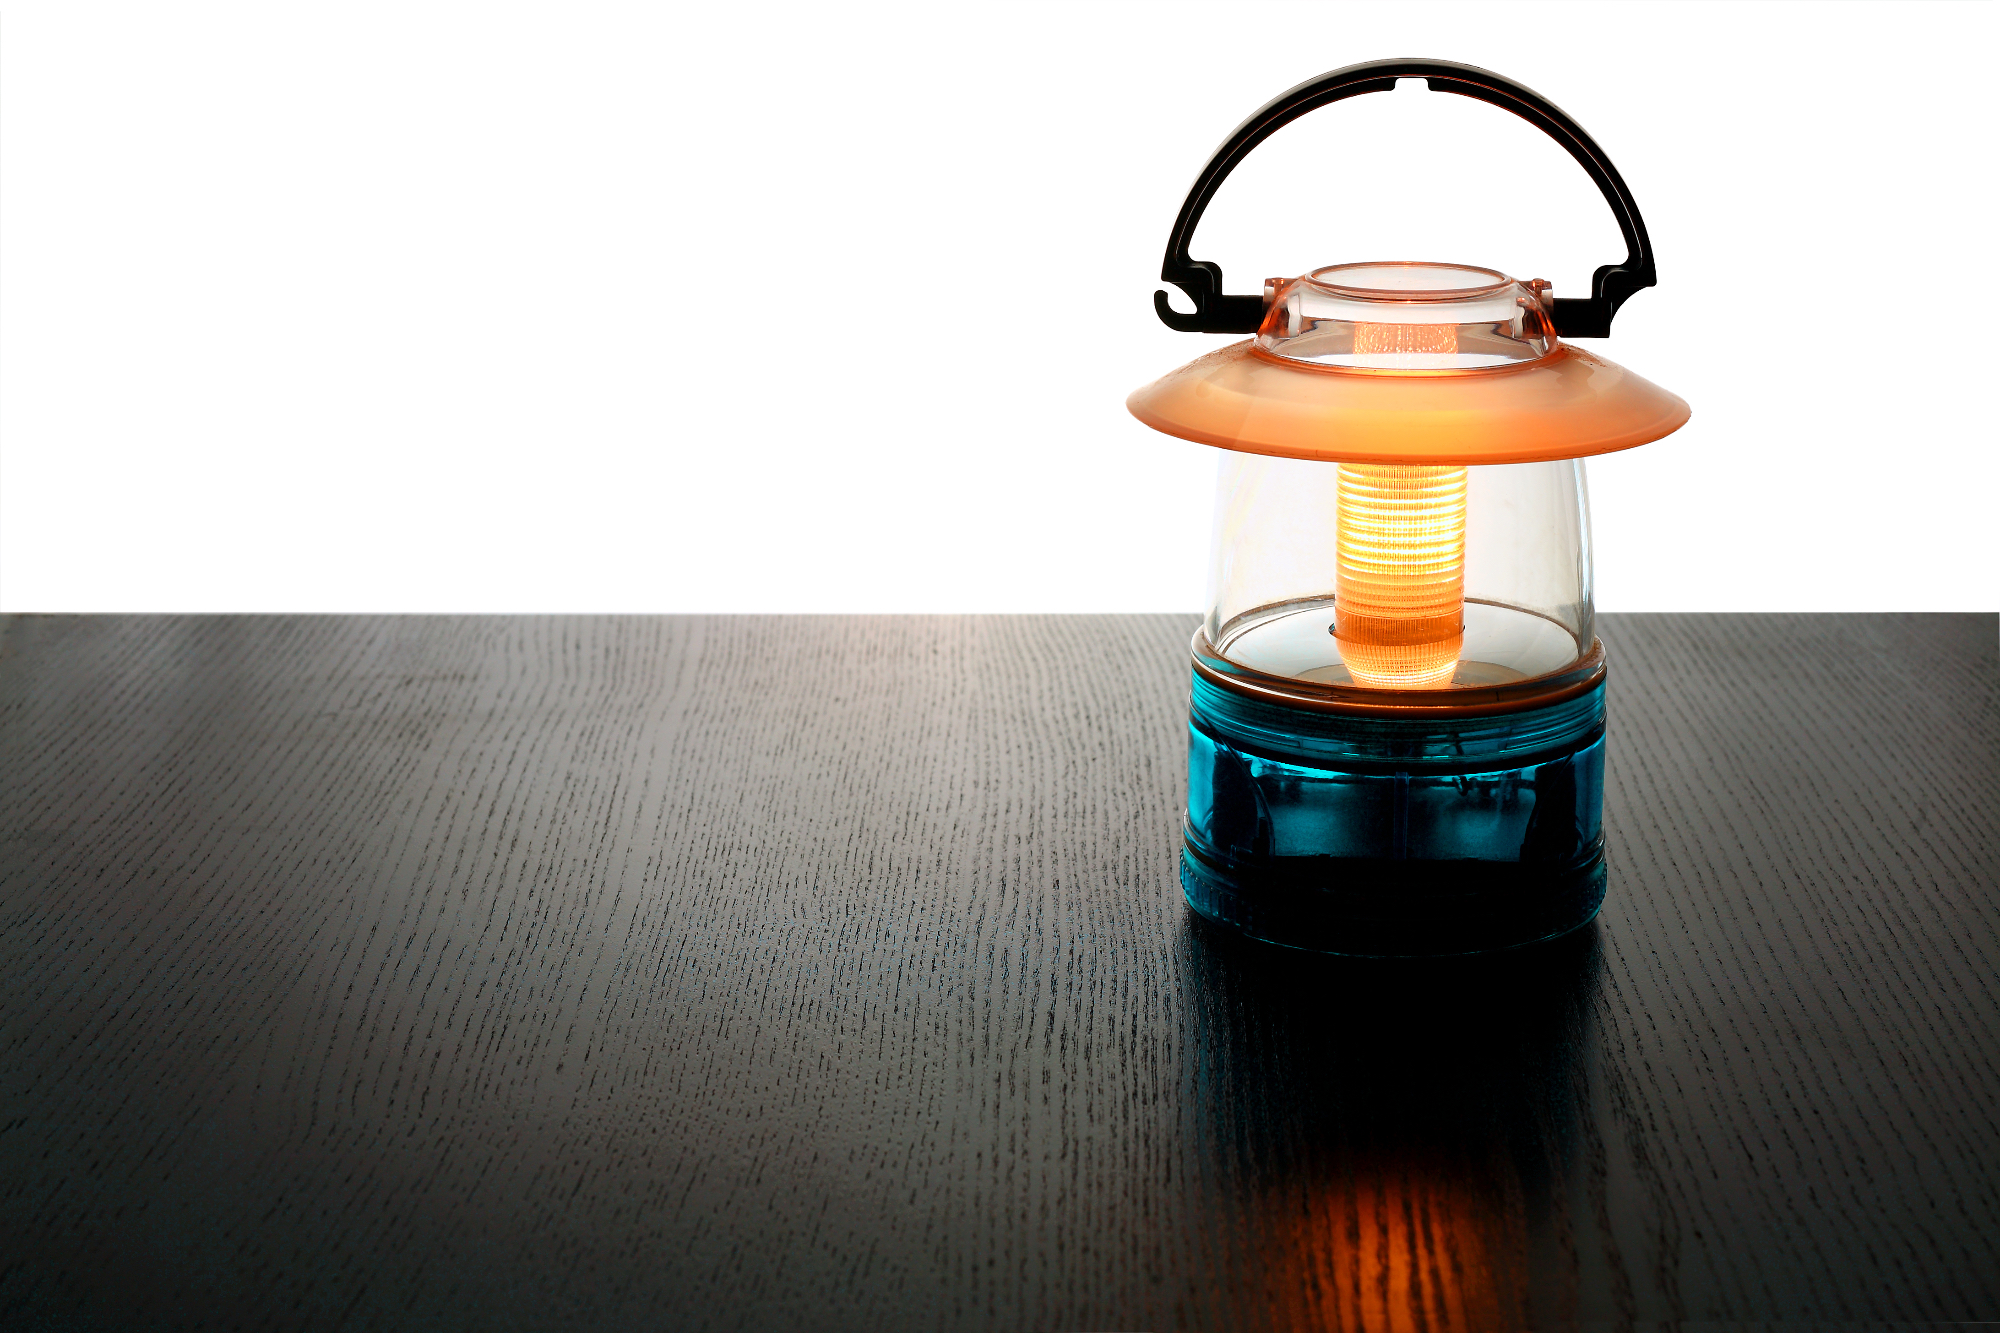 Lanterne so nekaj, kar lahko naredi prostor dosti bolj romantično